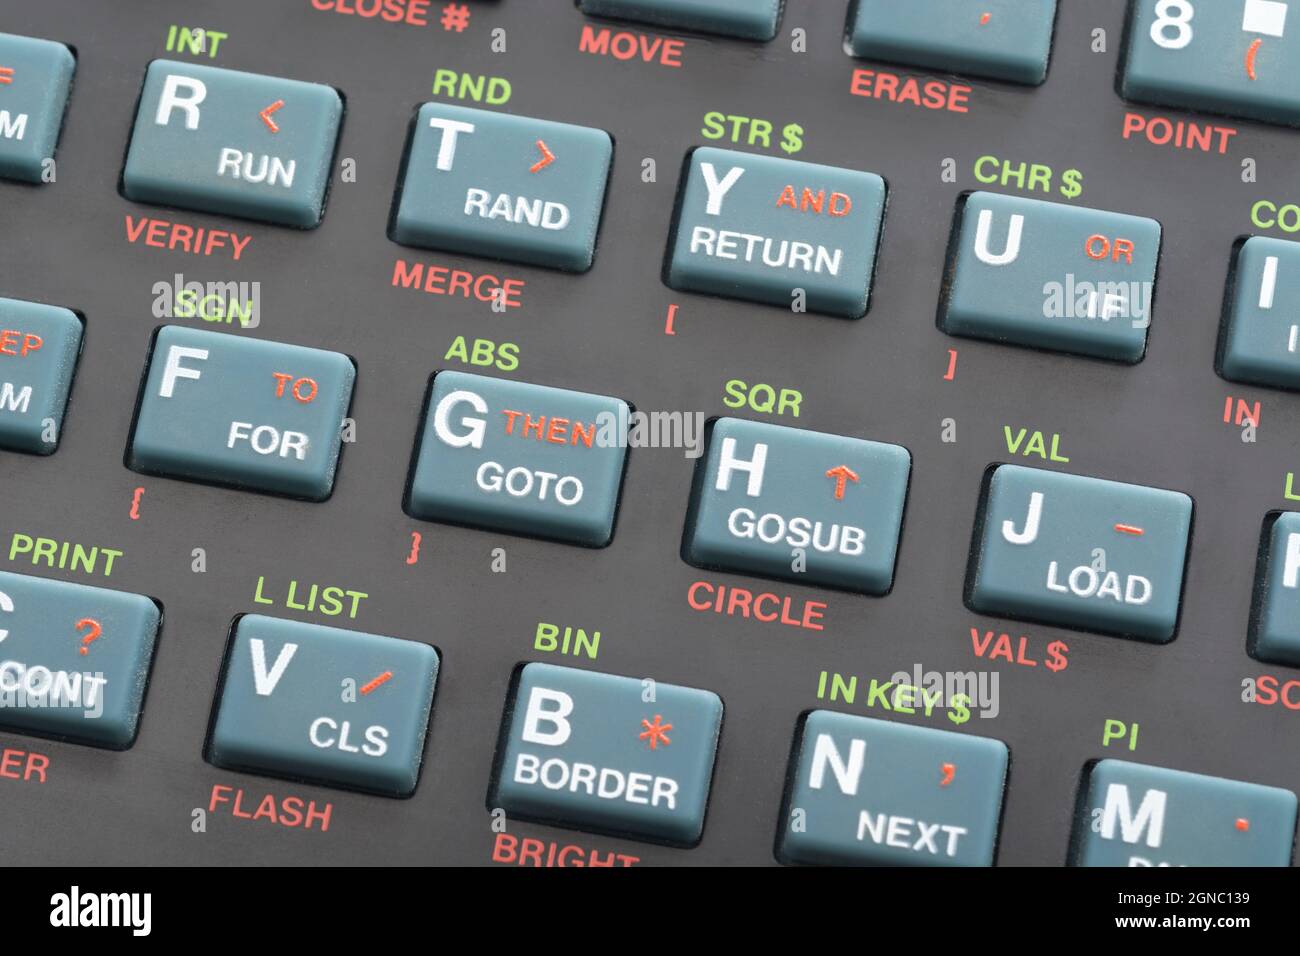 Primo piano della tastiera Sinclair ZX Spectrum. Concentrarsi sui tasti di comando GOTO/GOSUB di base. Computer domestico vintage a 8 bit degli anni '80 (vedere le note). Foto Stock